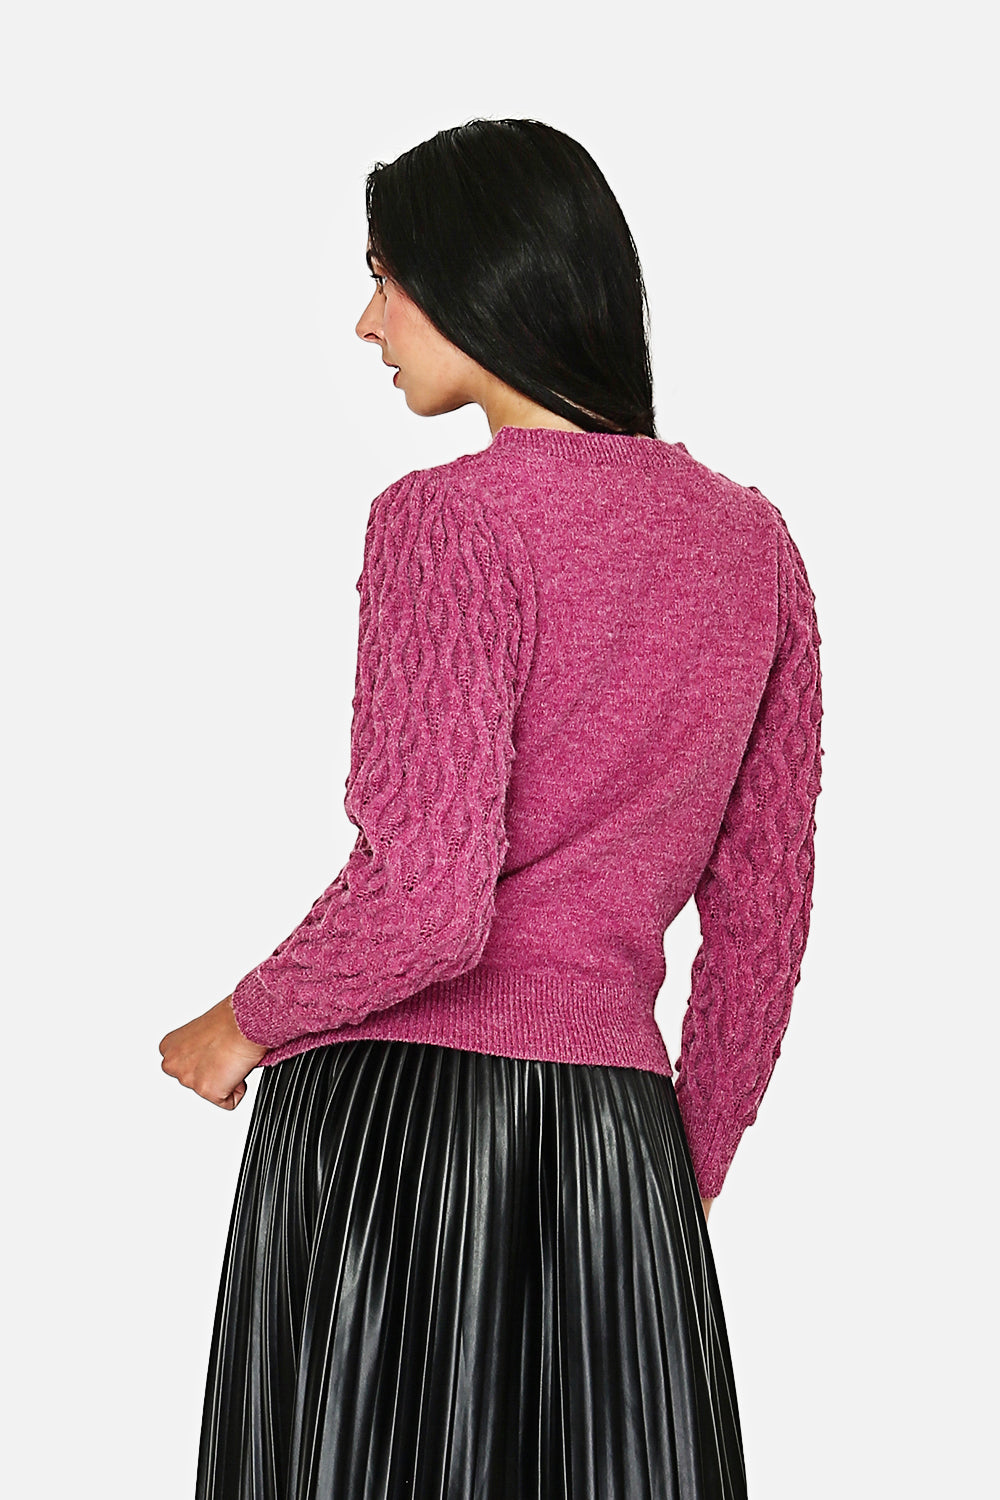 Fancy knit high-neck sweater